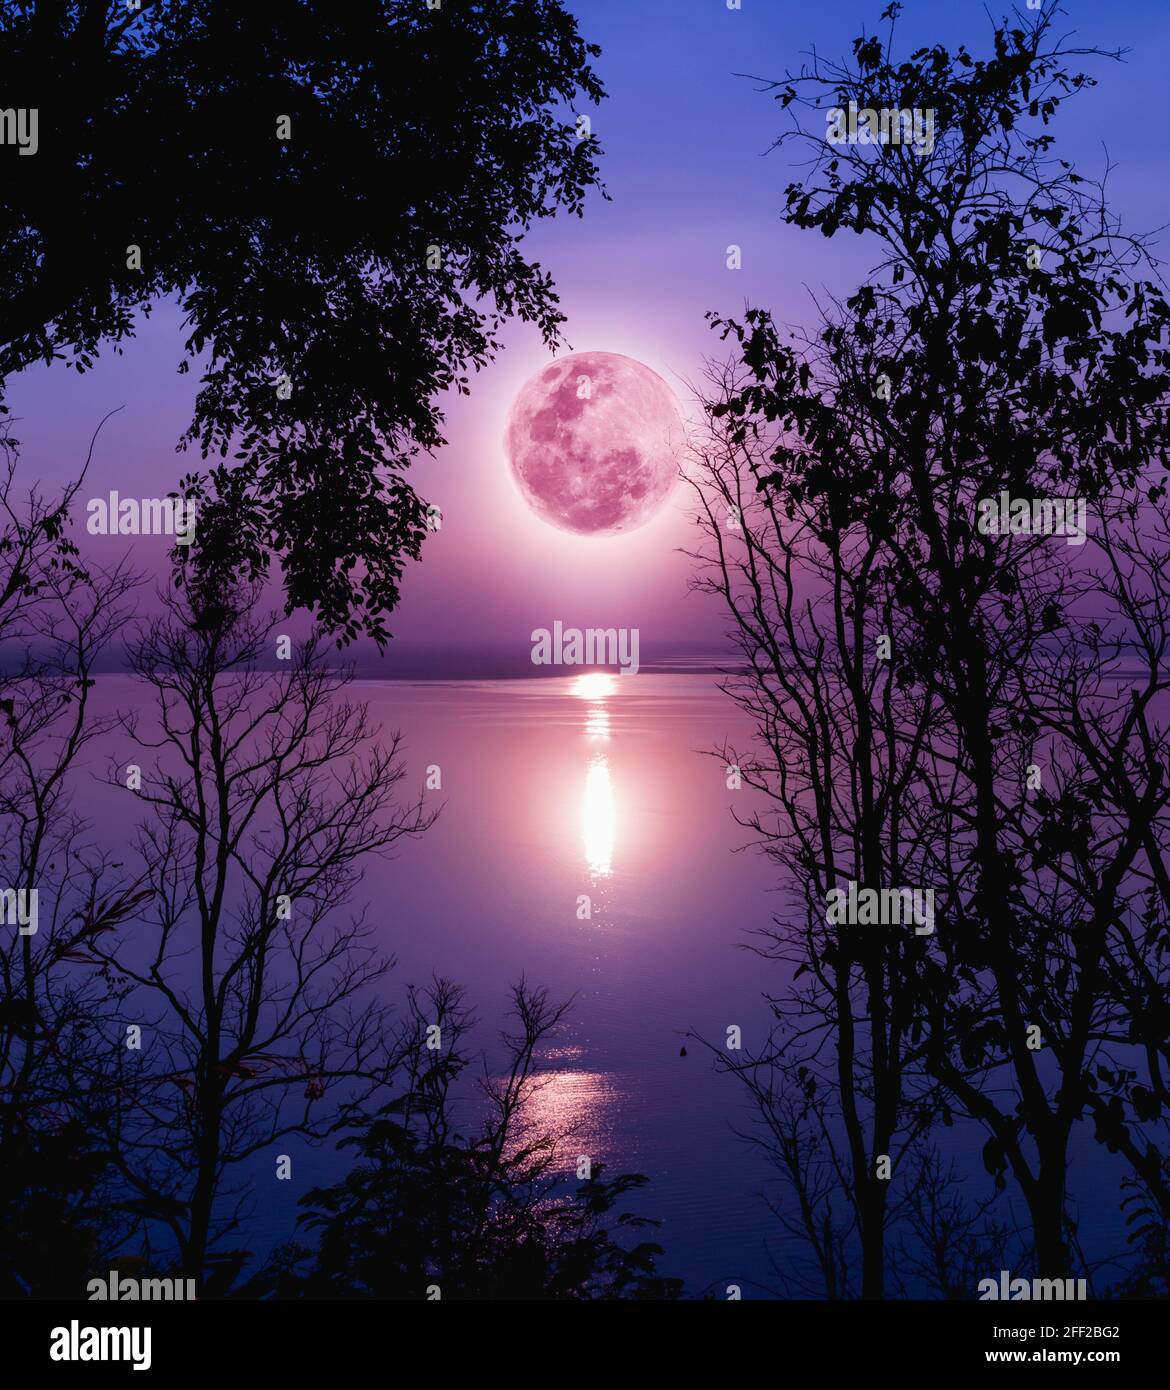 Baum gegen purpurnen Himmel über beschaulichen See. Silhouetten von Wäldern und schönen Mondaufgang, heller Vollmond würde ein schönes Bild machen. Die Schönheit der Natur Stockfoto